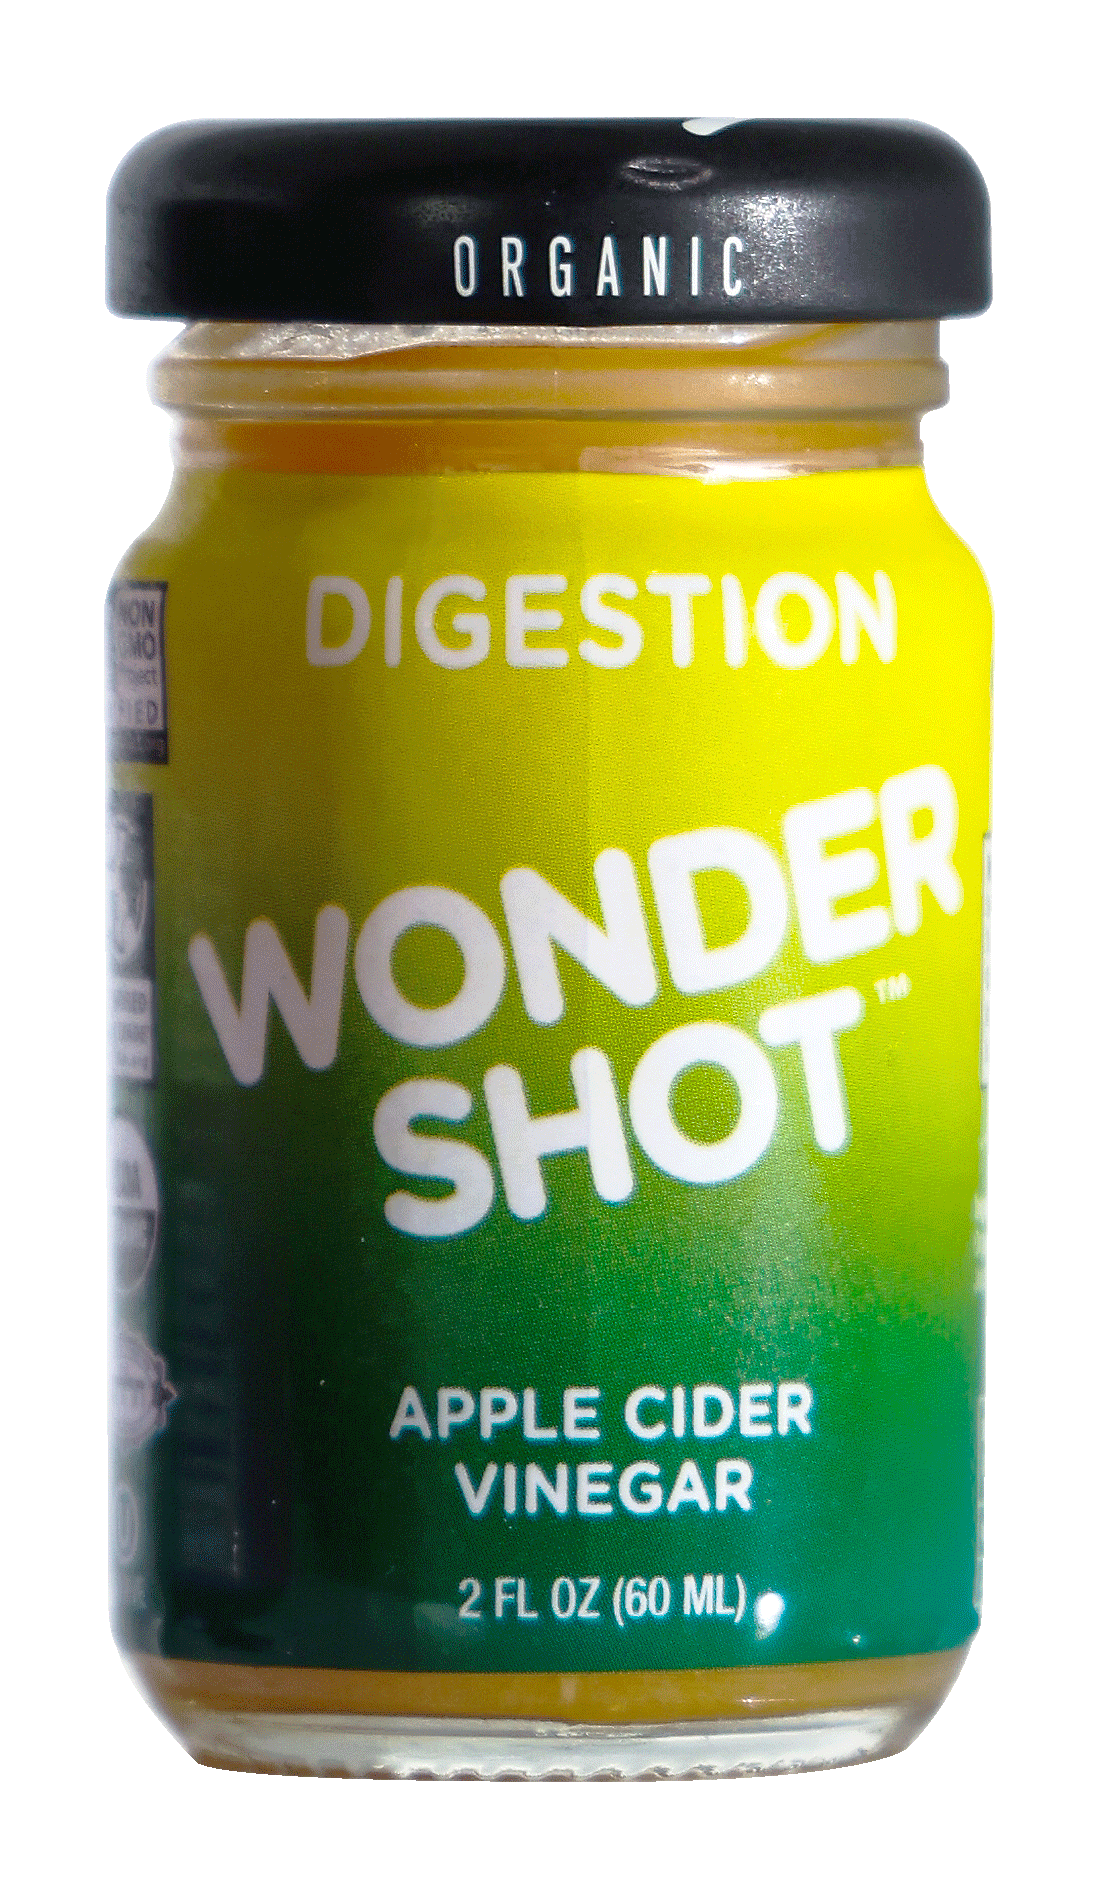 Wonder Shot Digestion package image